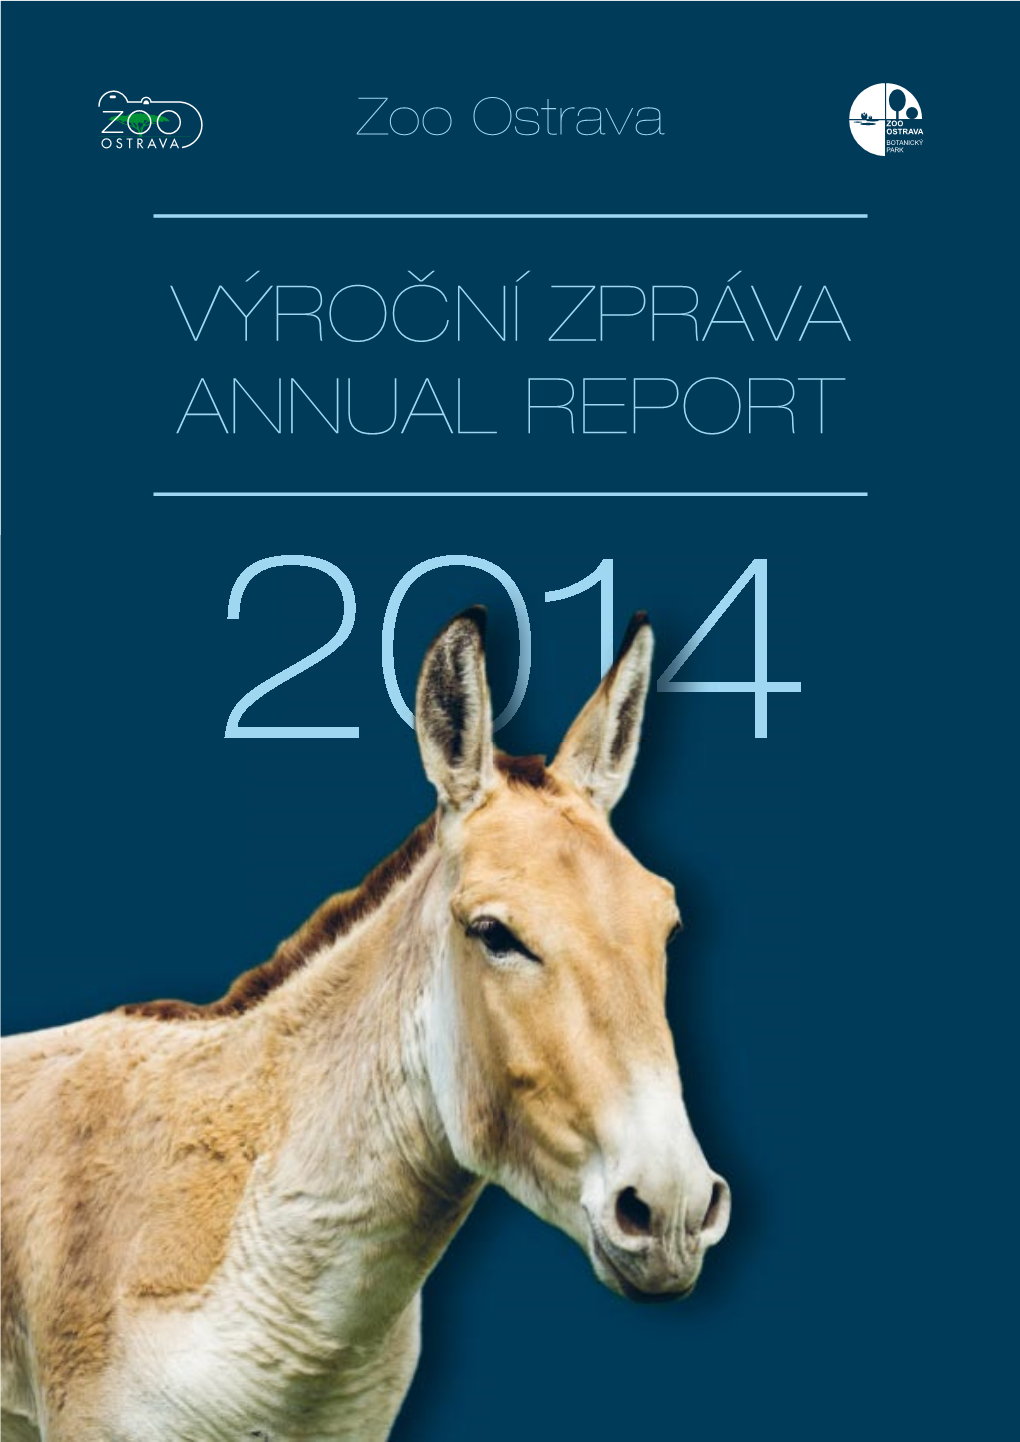 VÝROČNÍ ZPRÁVA ANNUAL REPORT 2014 Zoologická Zahrada Ostrava / Zoological Garden Ostrava